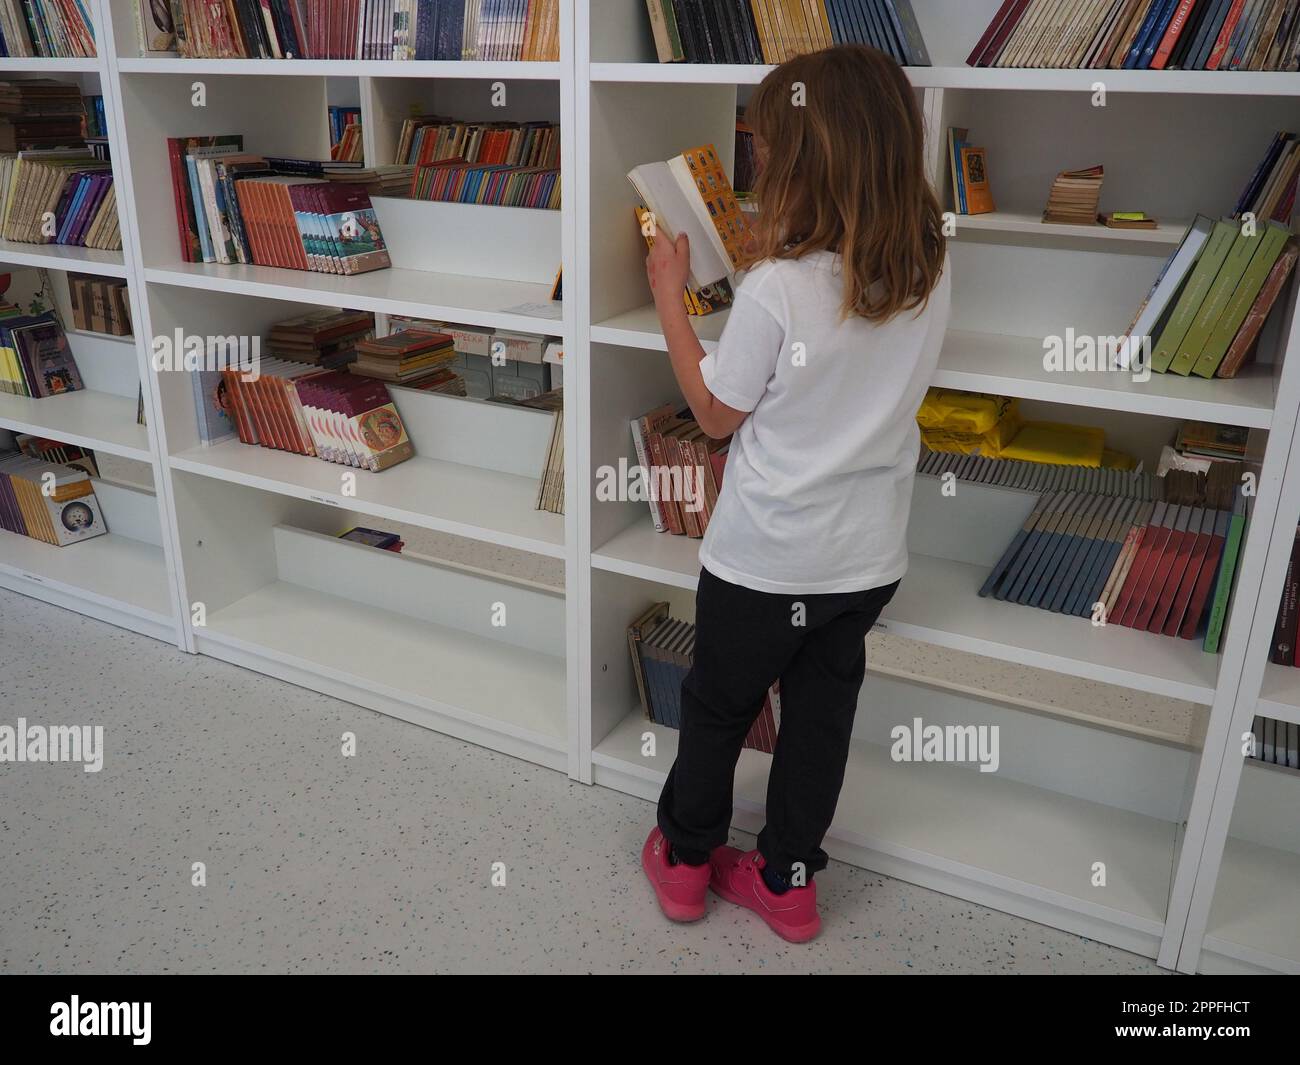 Sremska Mitrovica, Serbien, 15. Mai 2021. Ein 7-jähriges Mädchen in einem weißen T-Shirt steht neben dem Bücherregal in der Bibliothek und liest ein Buch. Schulbildung. Liebe für Literatur und Lesen Stockfoto